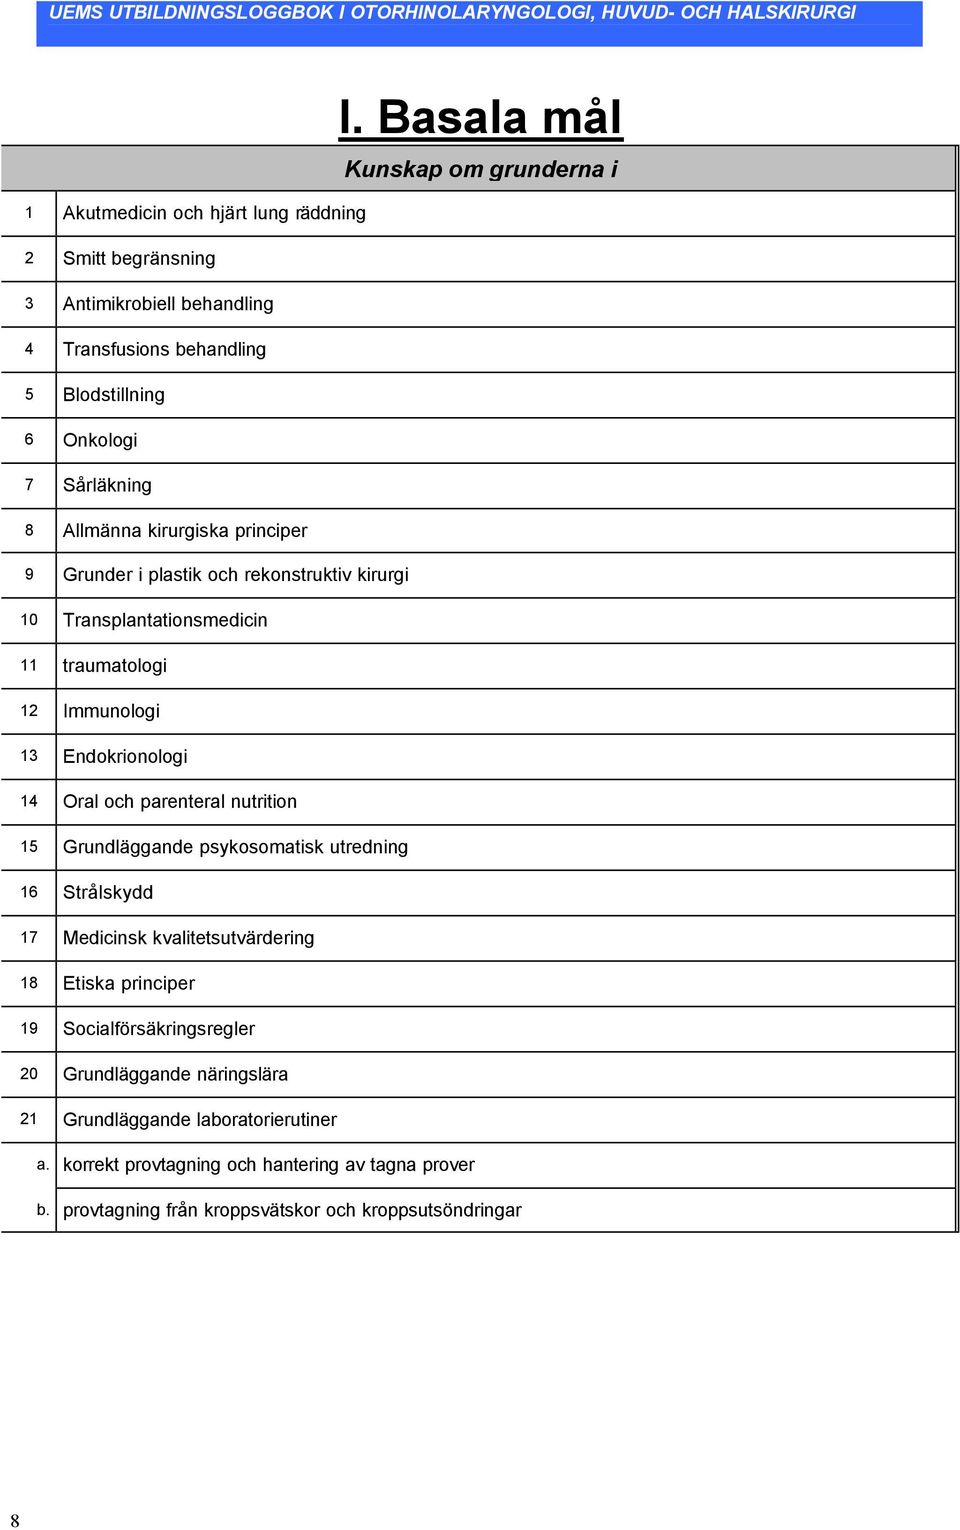 Endokrionologi 14 Oral och parenteral nutrition 15 Grundläggande psykosomatisk utredning 16 Strålskydd 17 Medicinsk kvalitetsutvärdering 18 Etiska principer 19